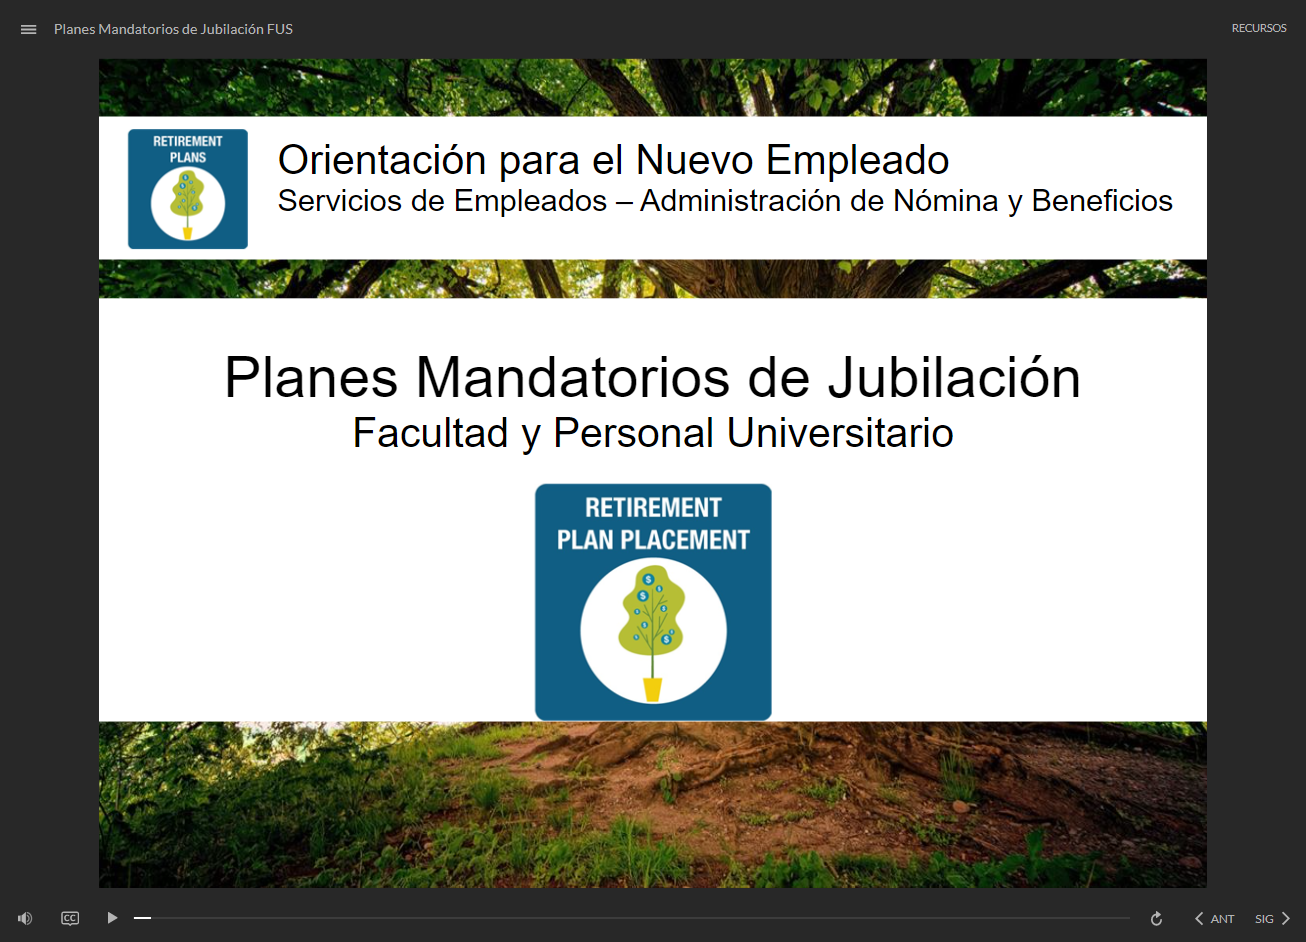 Planes Mandatorios de Jubilación para Facultad y Personal Universitario - click to watch course